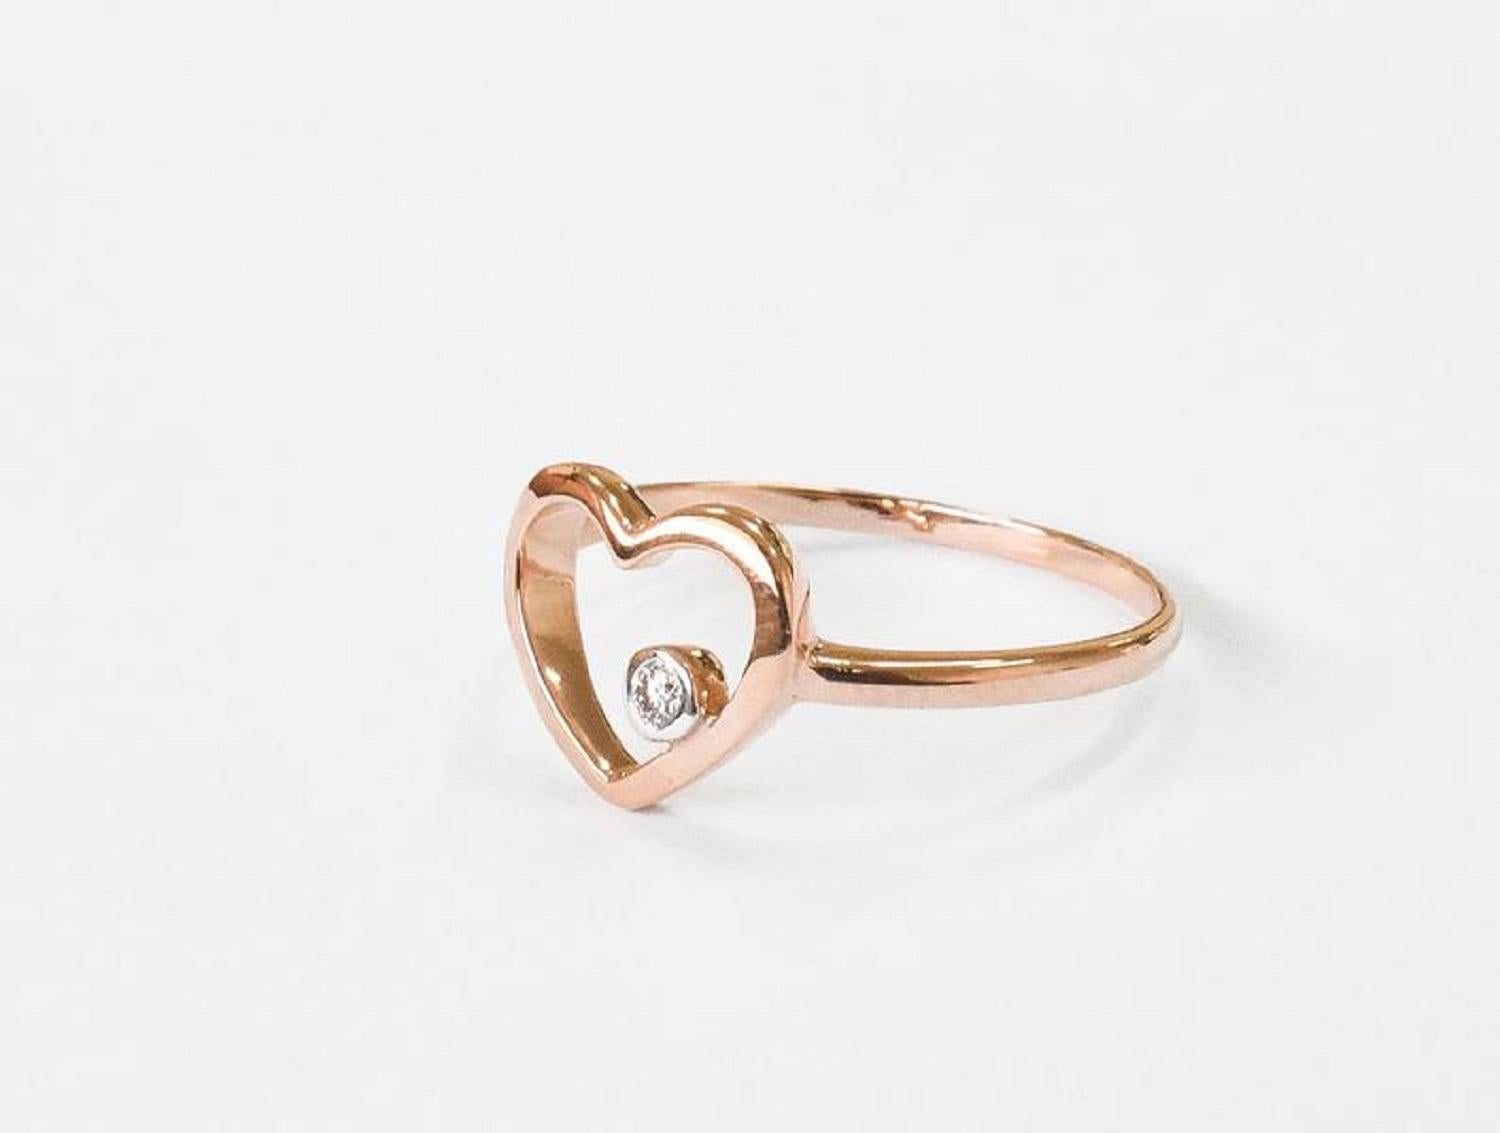 For Sale:  18k Rose Gold Diamond Heart Ring Minimal Heart Ring with Bezel Set Diamond 7